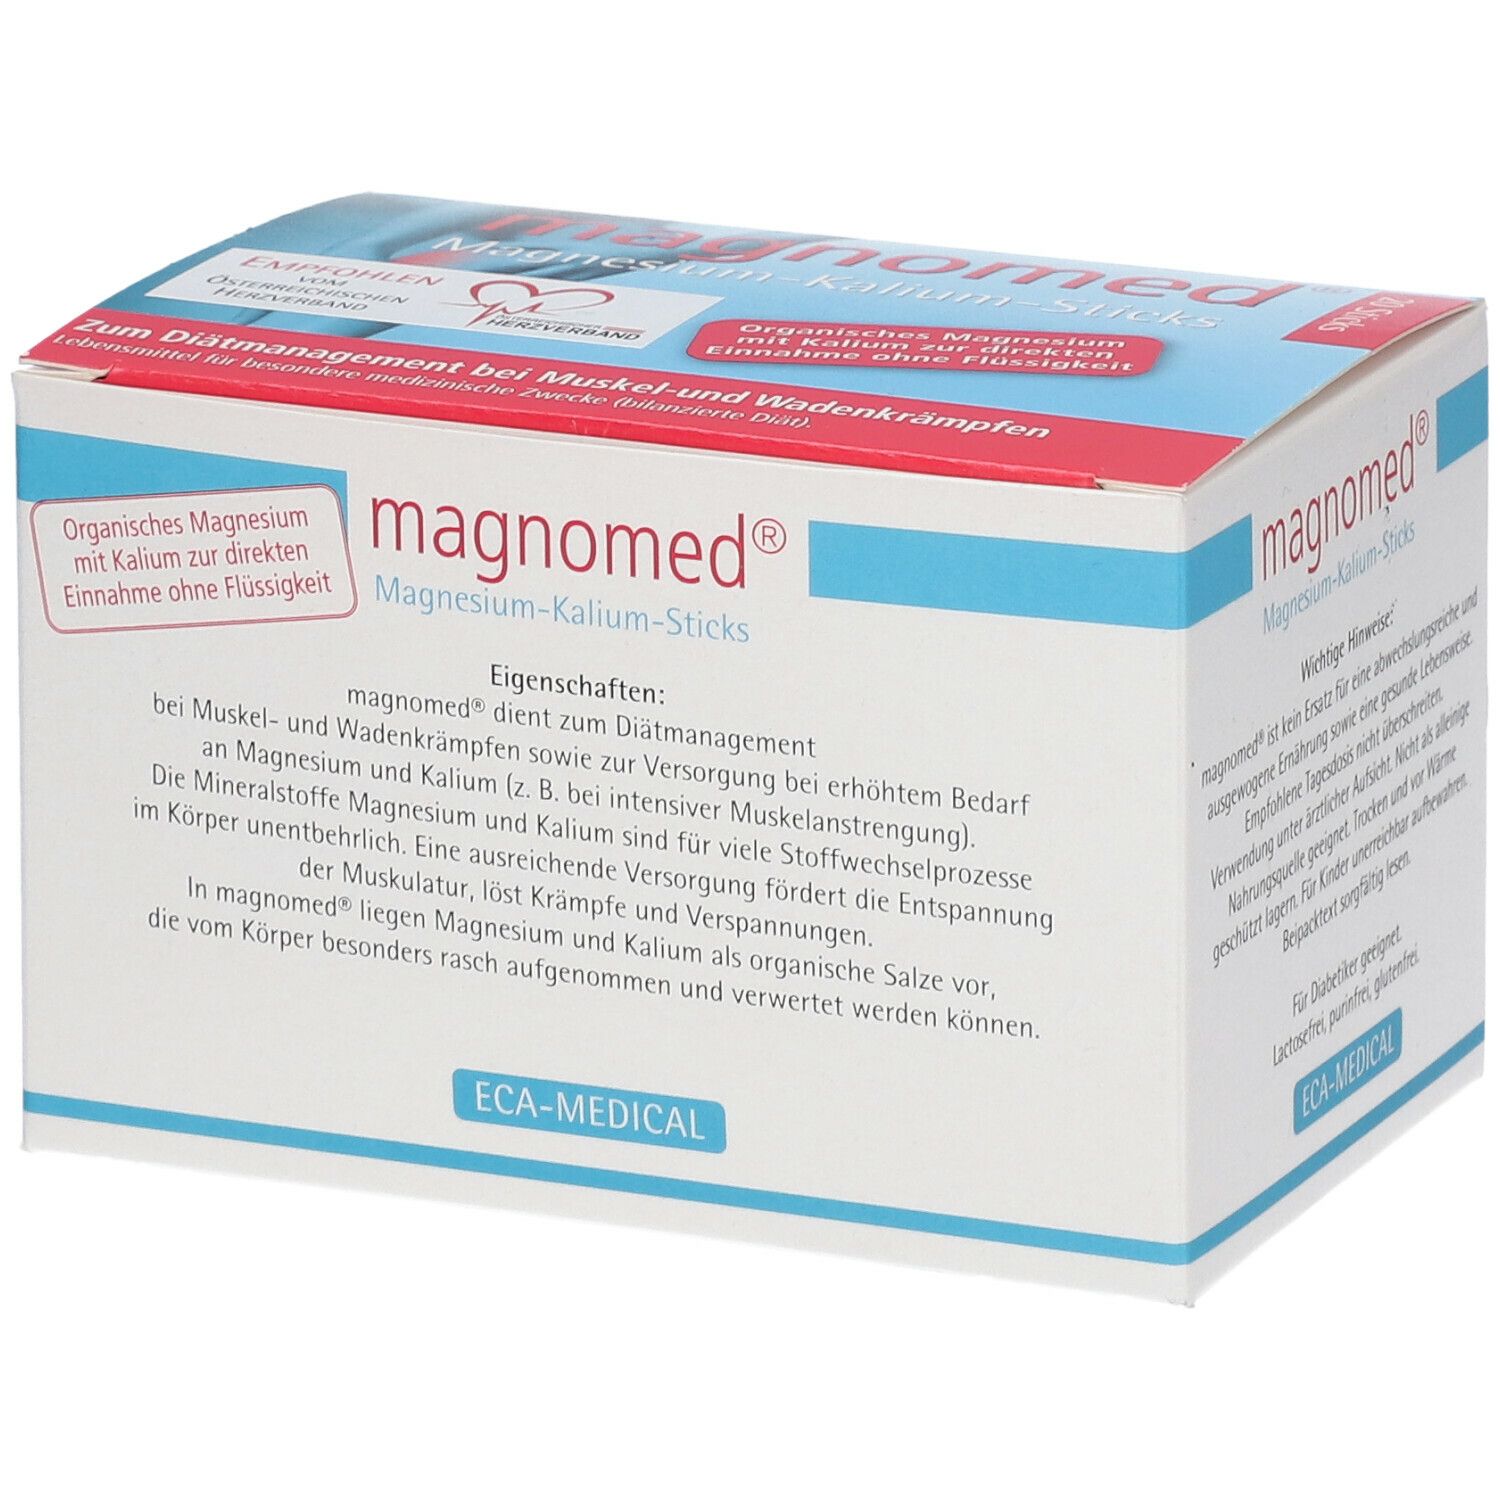 magnomed® Magnesium-Kalium-Sticks